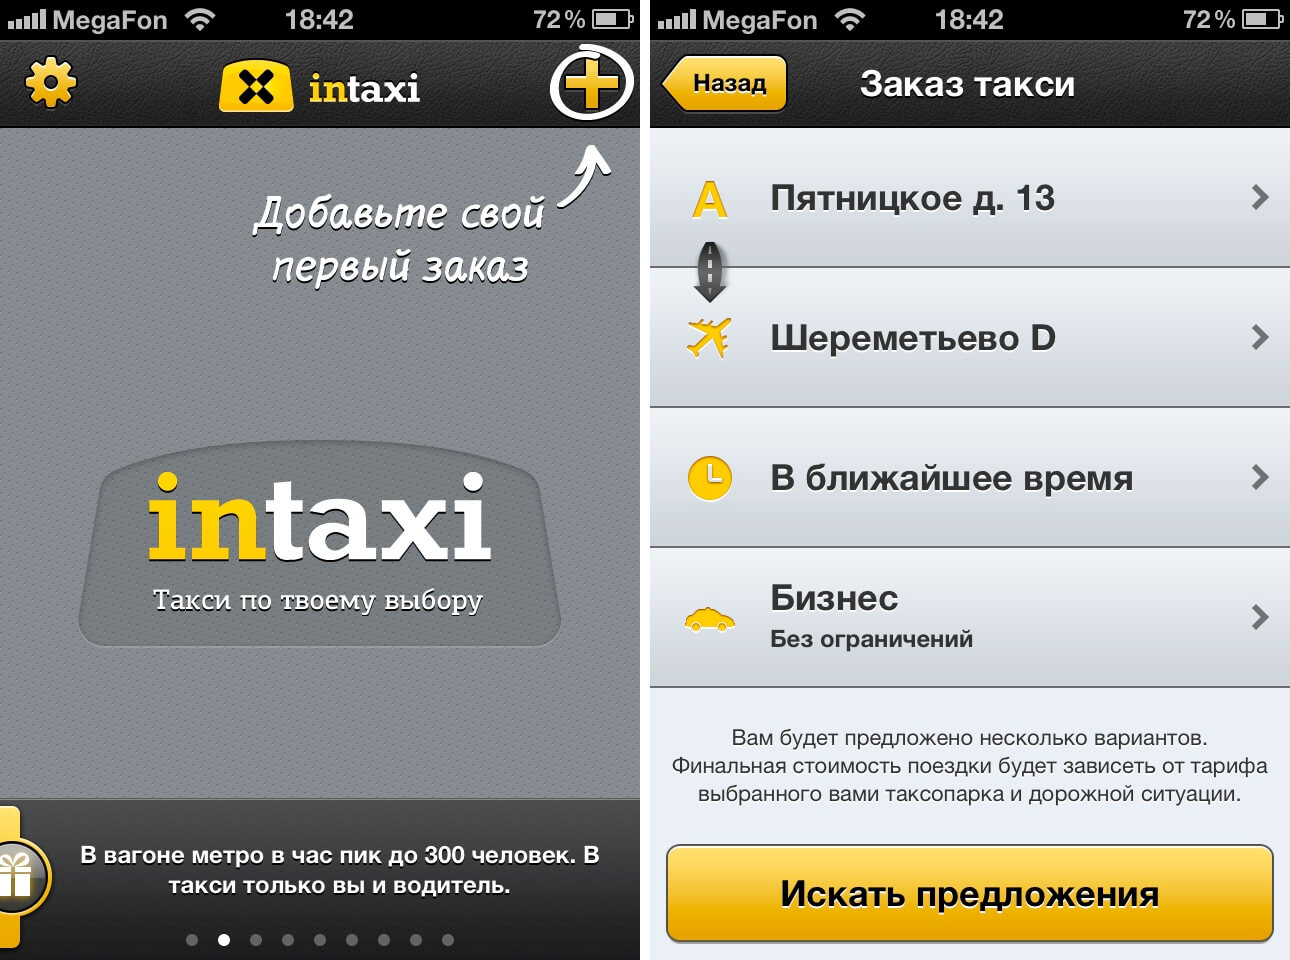 Как заказать такси к определить времени. Приложение такси. Программа "такси". Такси приложение для водителей. Интерфейс приложения такси для водителей.